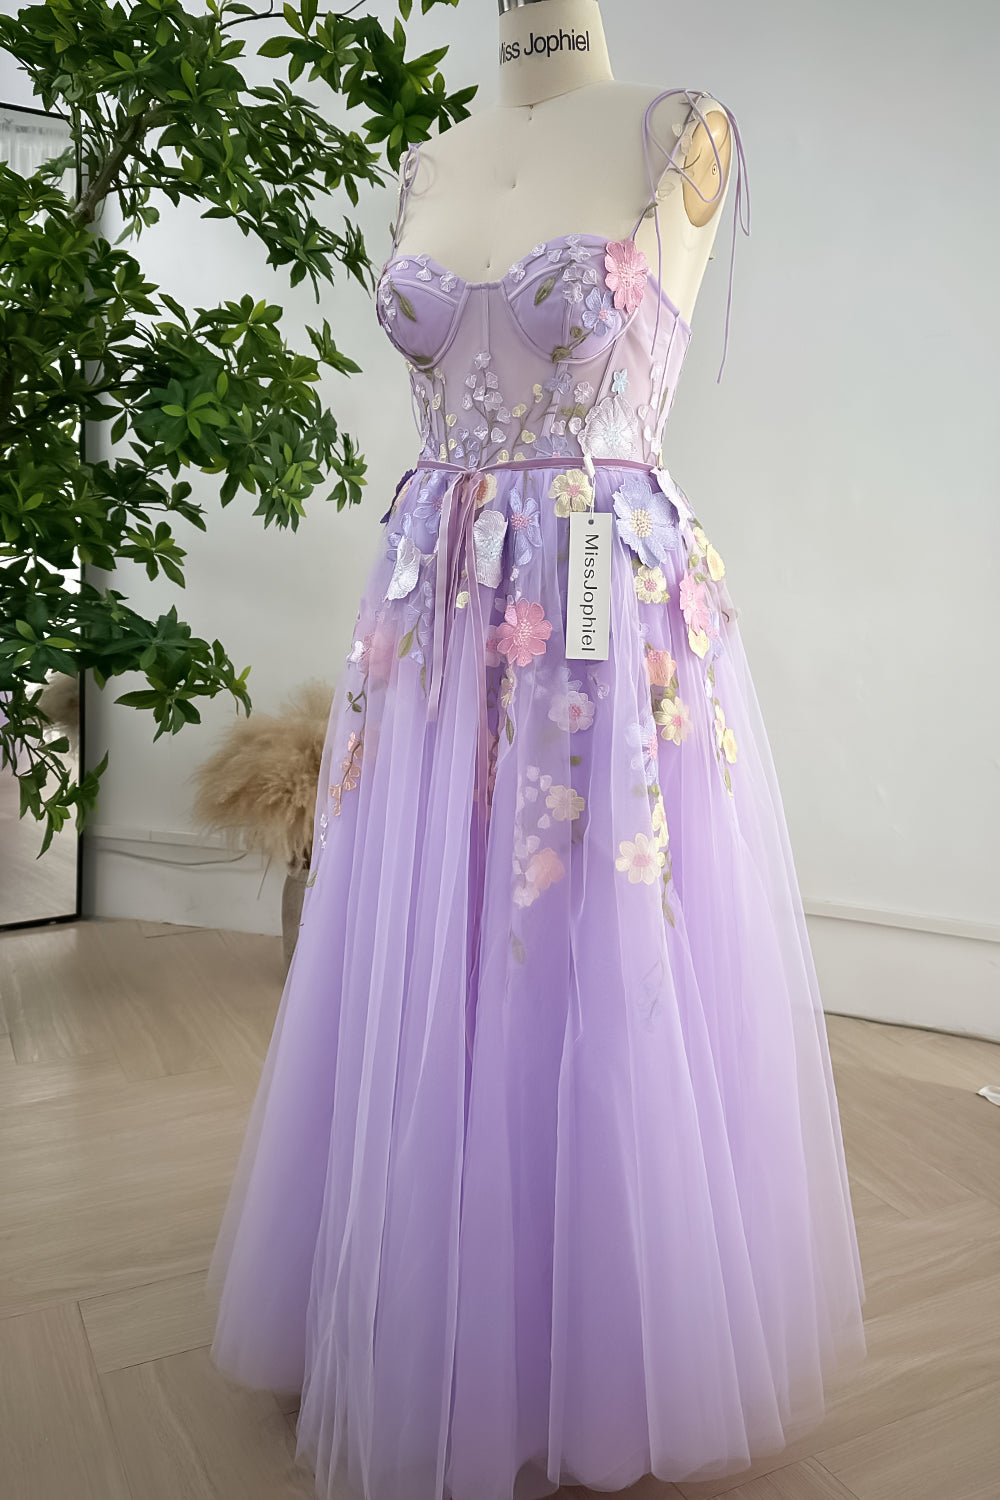 MissJophiel Embroidery Floral Corset Lavender Dress with Removable Tie ...